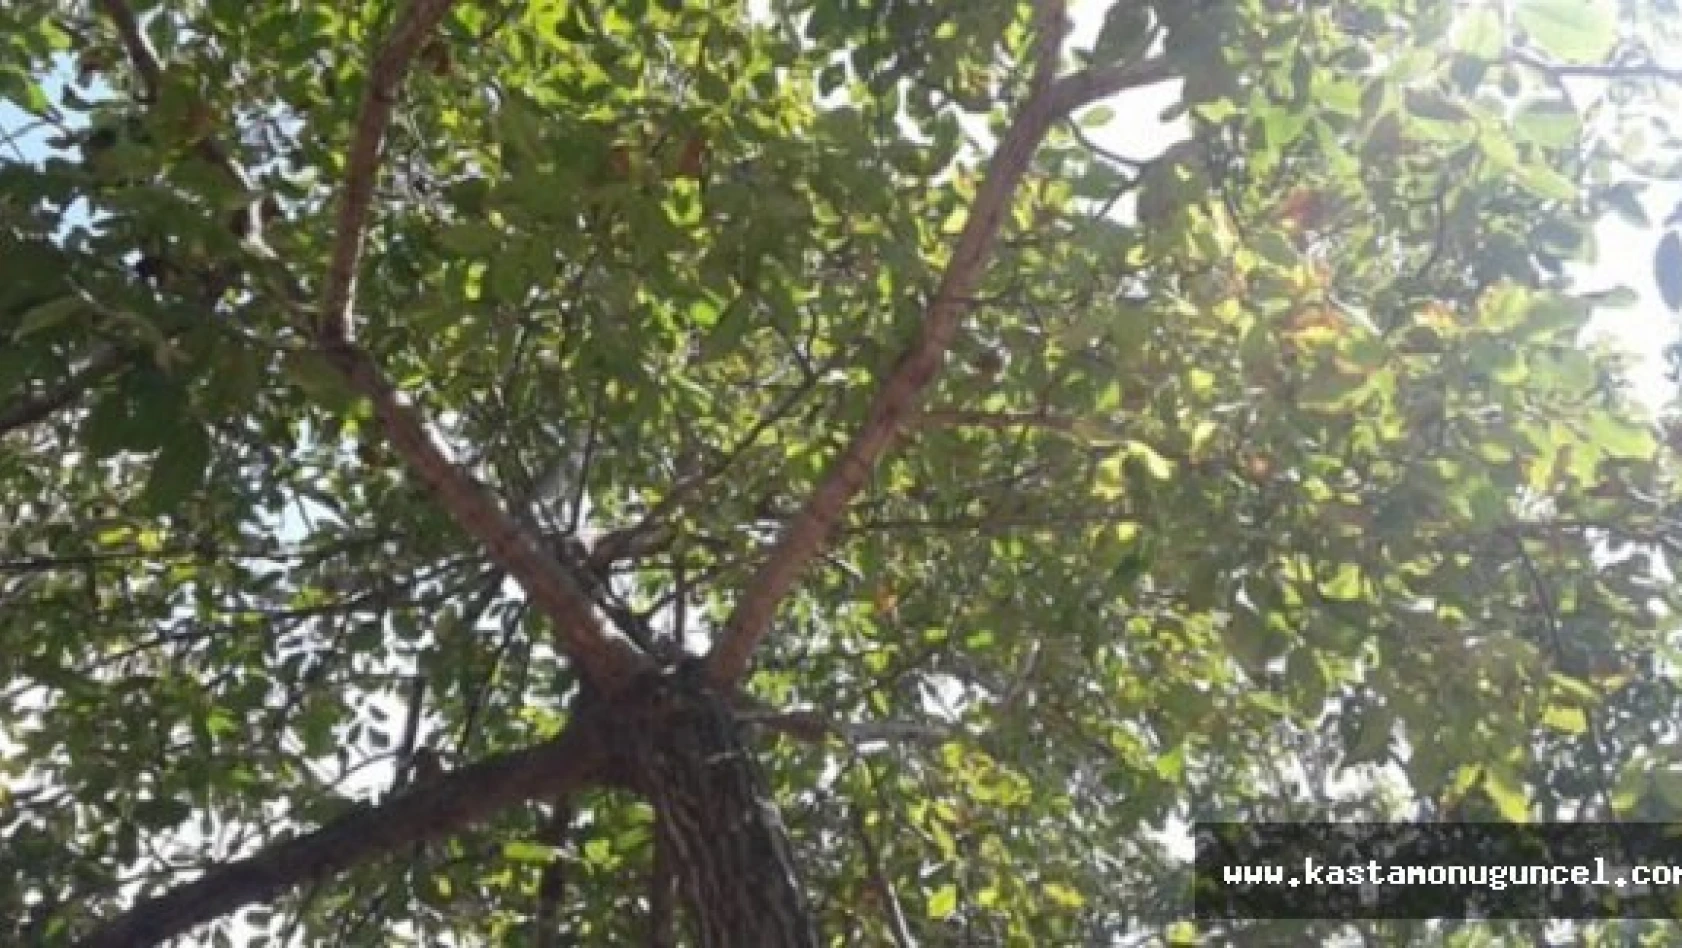 Kastamonu'da Ceviz Ağacından Düşen Kişi, Öldü